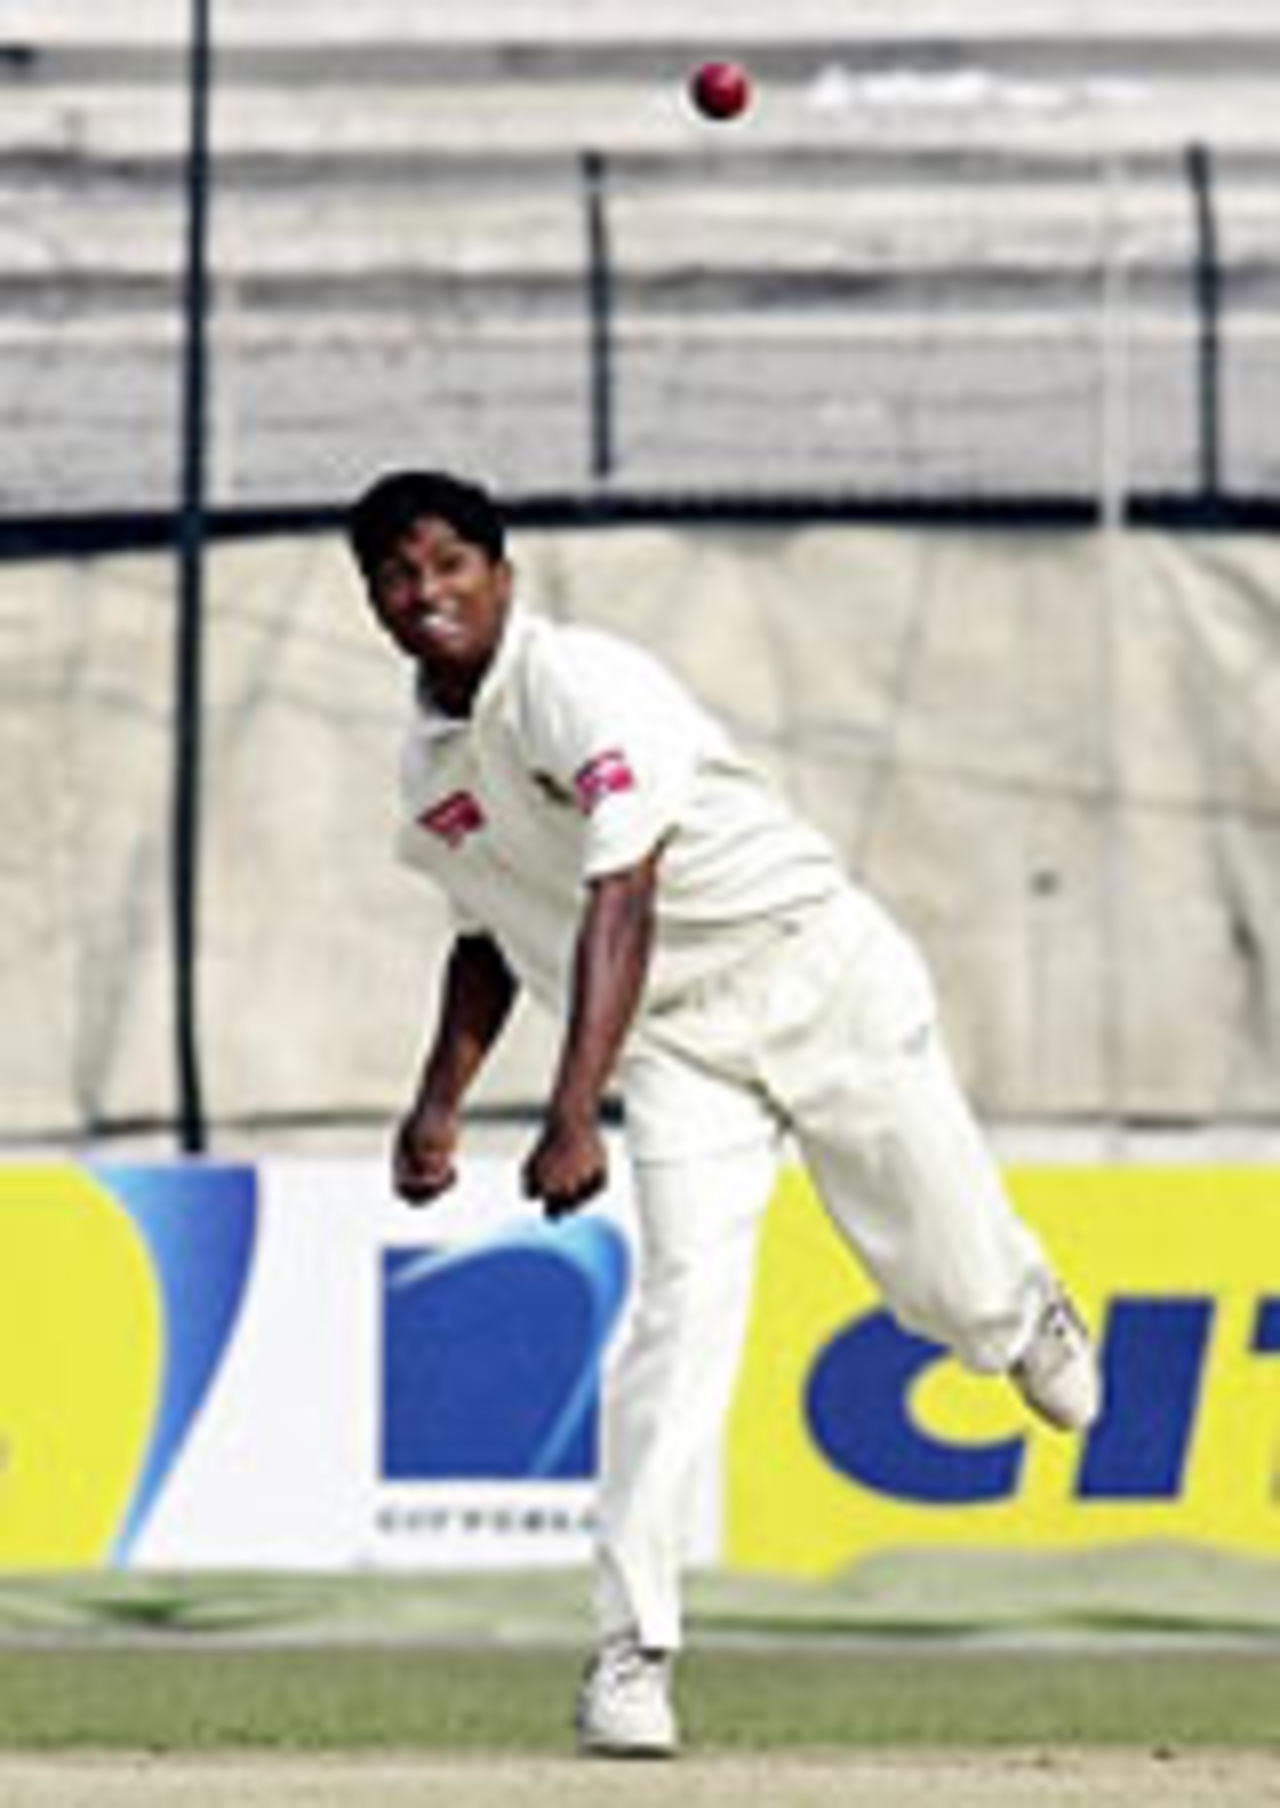 Enamul Haque jnr bowls, Bangladesh v Zimbabwe, 2nd Test, Dhaka, 2nd day, January 15, 2005